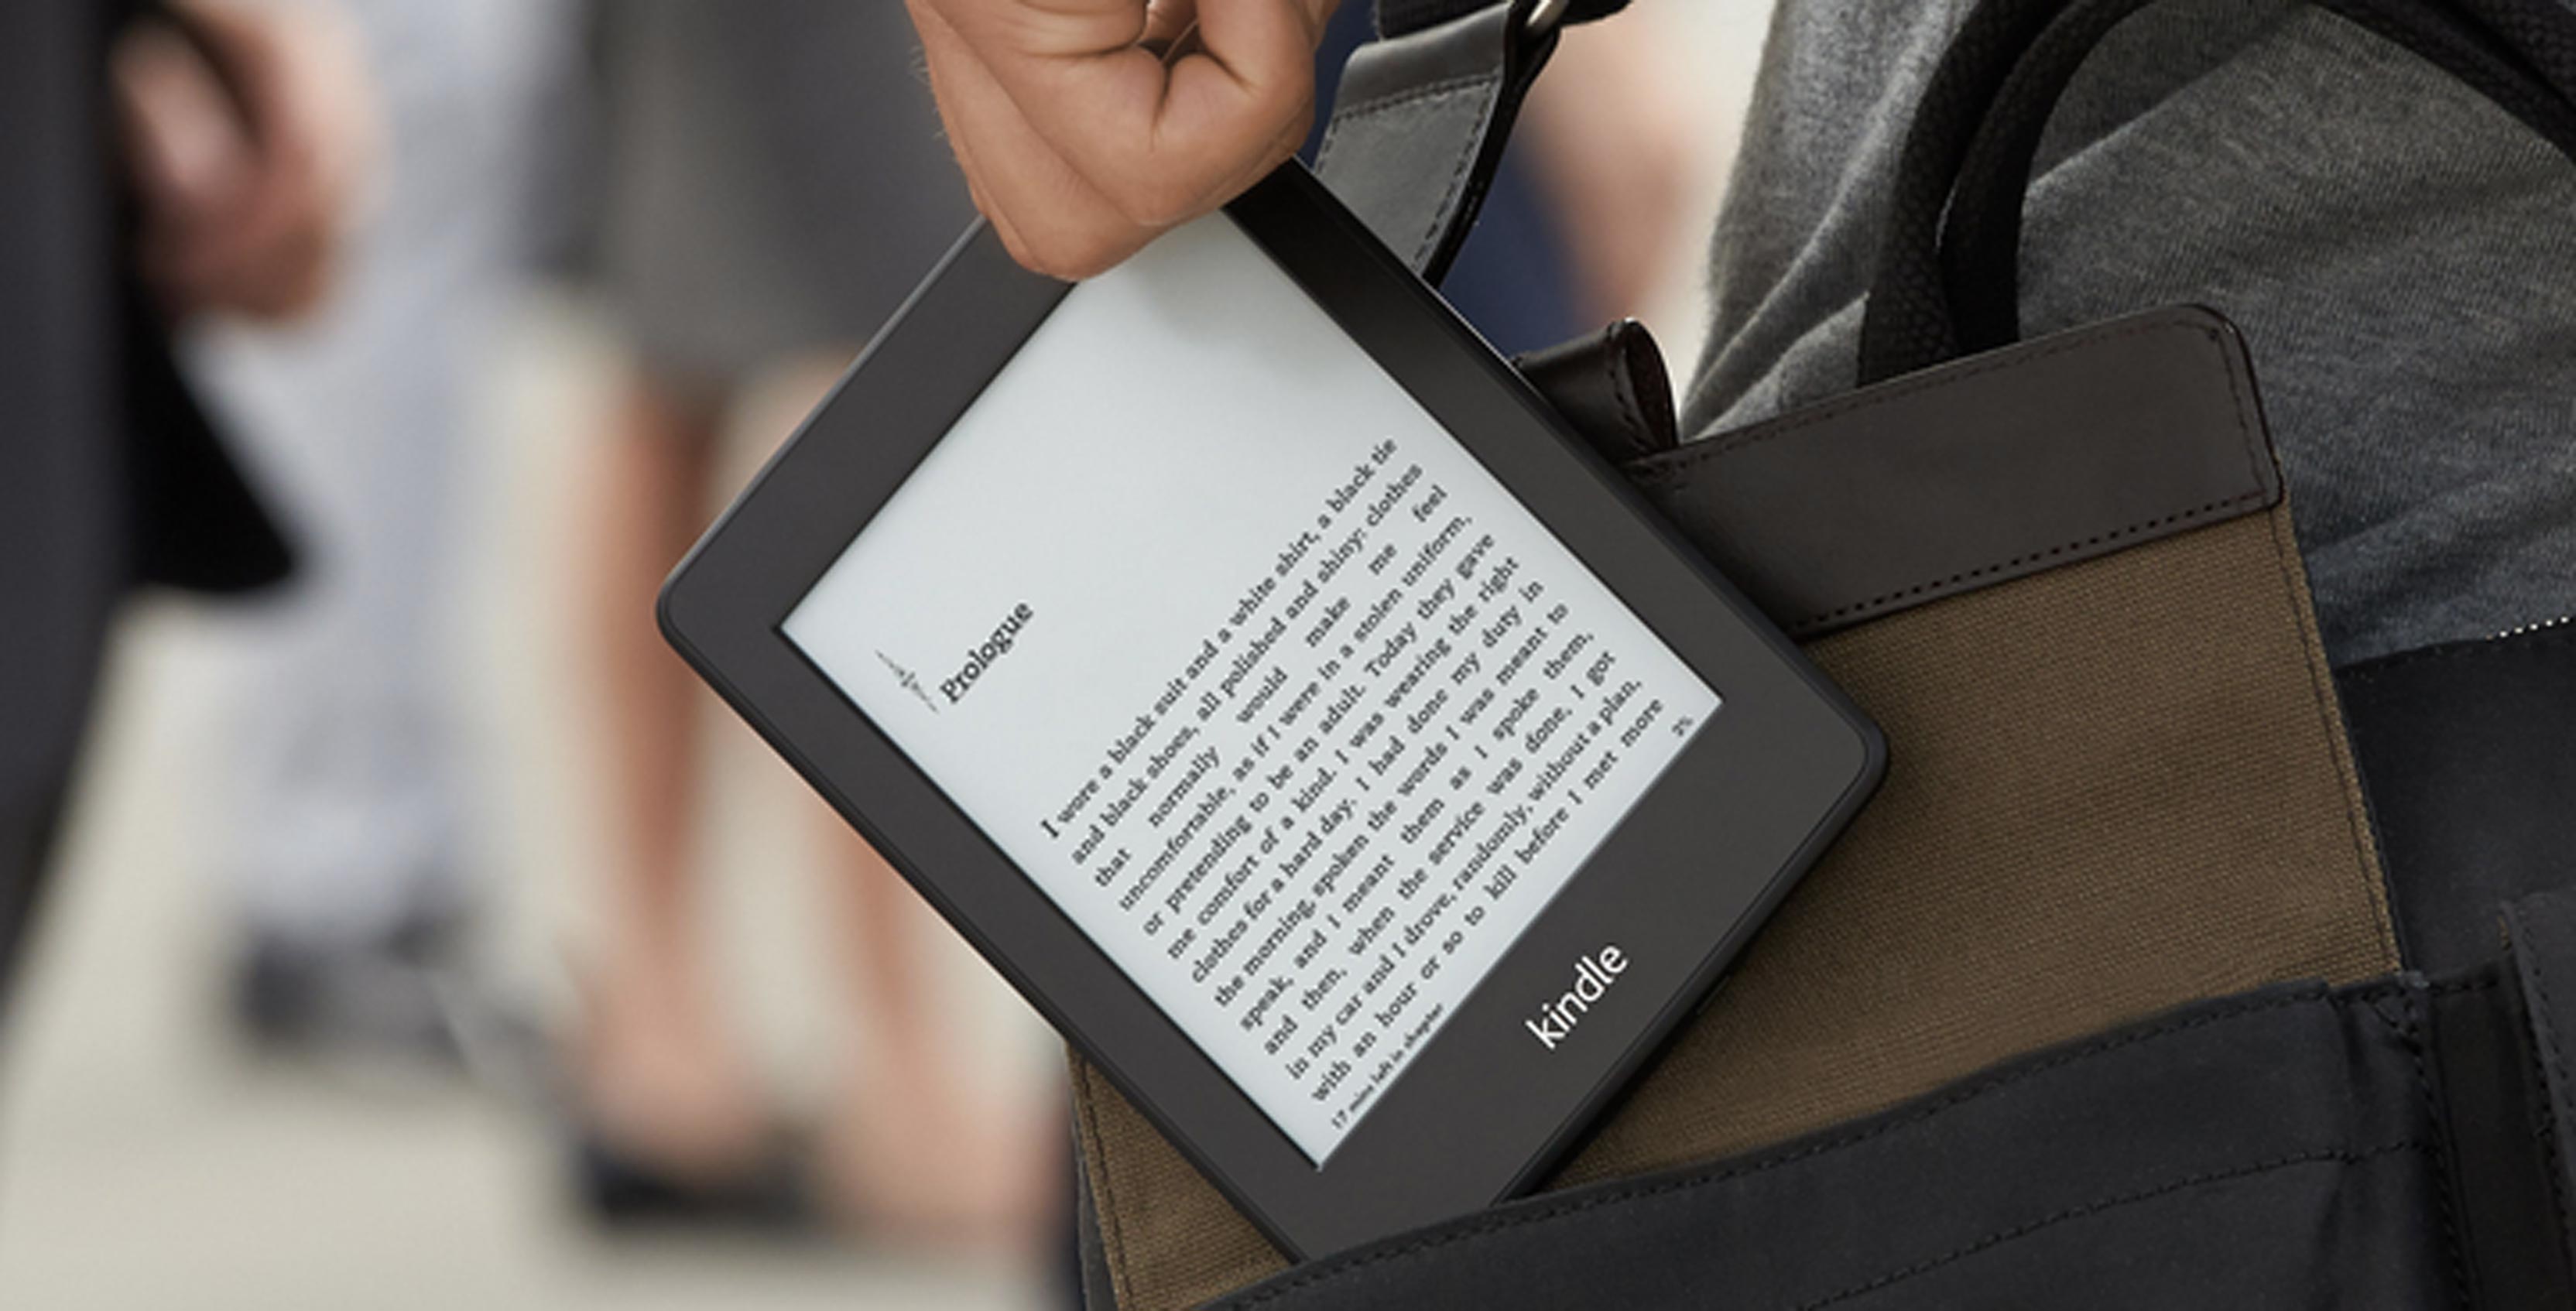 Amazon Kindle Paperwhite promotional image